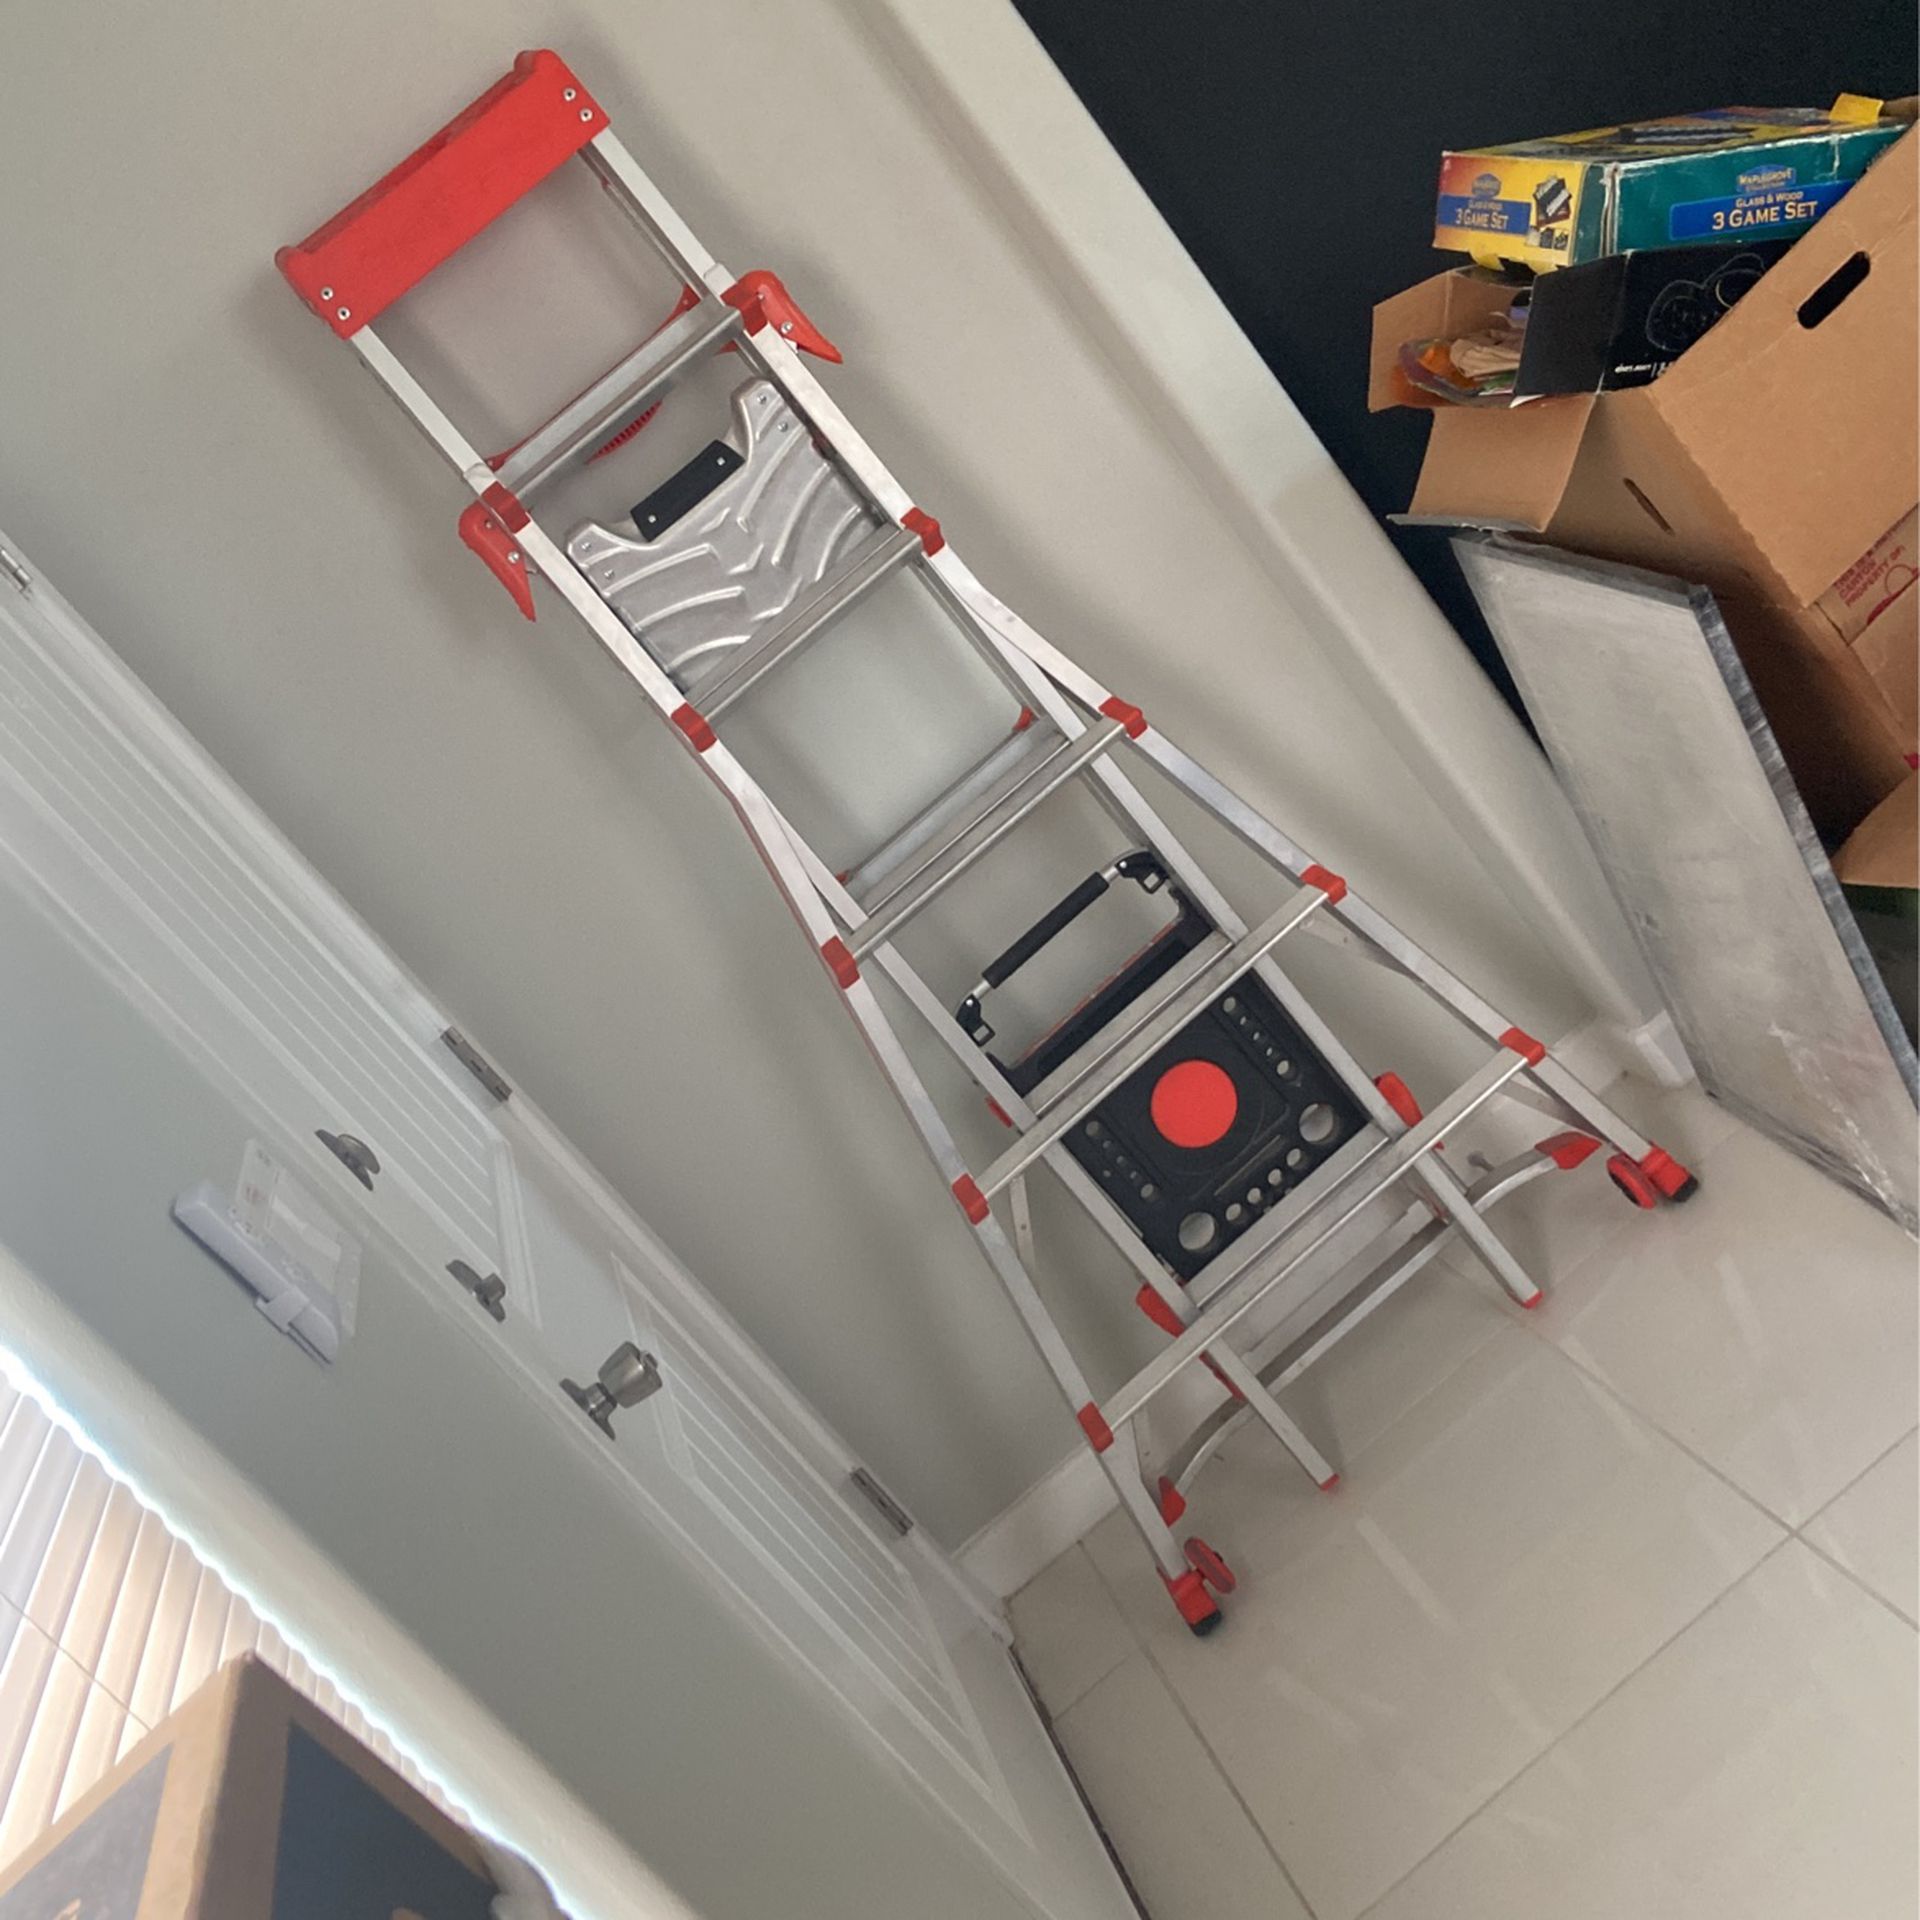 Little Giant Ladder 